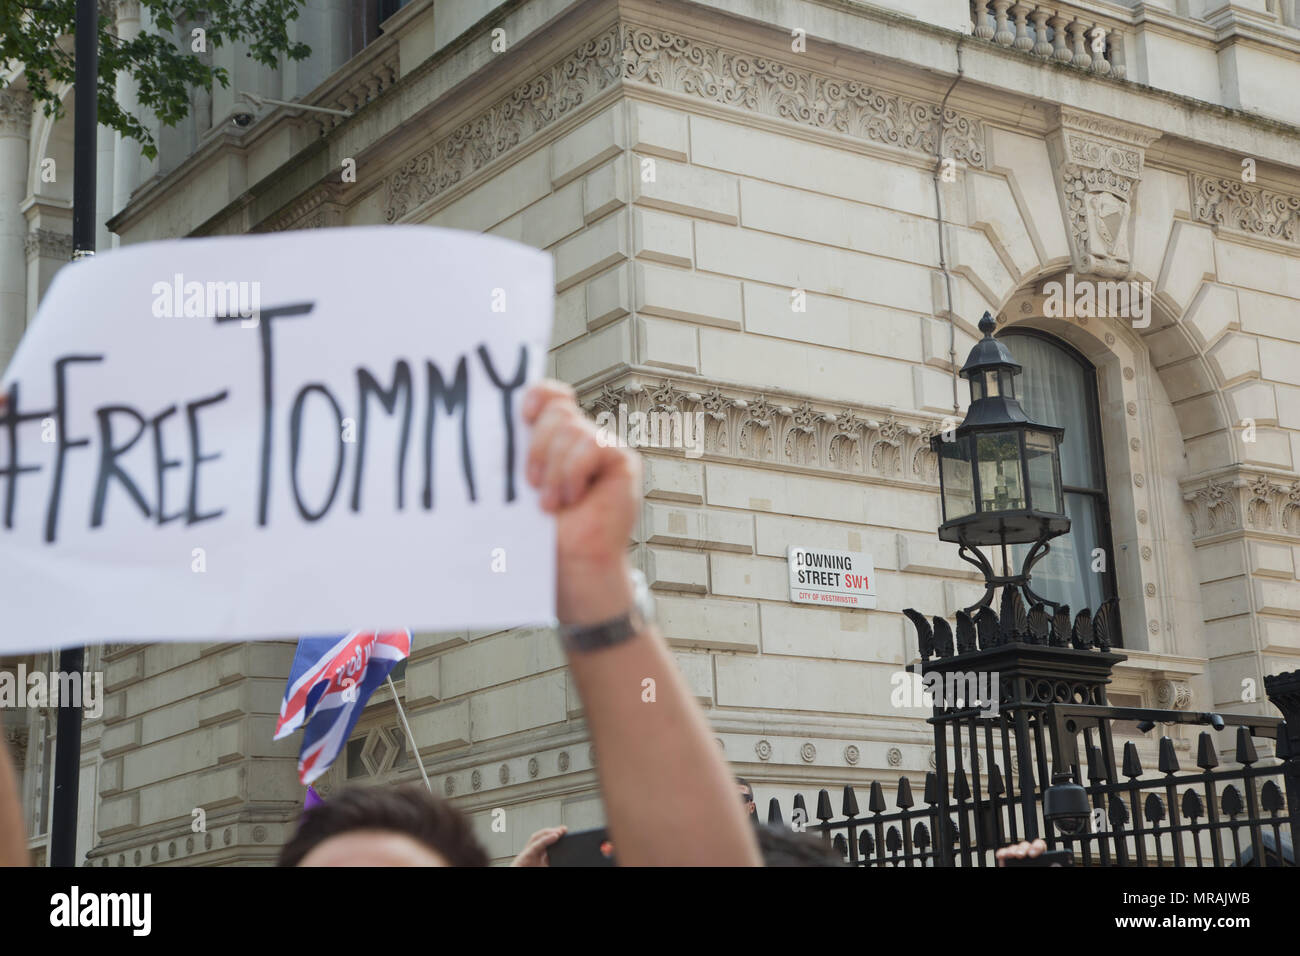 London UK 26 mai 2018 les partisans d'extrême droite manifestation devant Downing Street exigeant la libération de Tommy Robinson, qui a été arrêté pour violation de la paix à l'extérieur d'une maison de la cour à Leeds le 25 mai sur la suspicion de violation de la paix. Banque D'Images